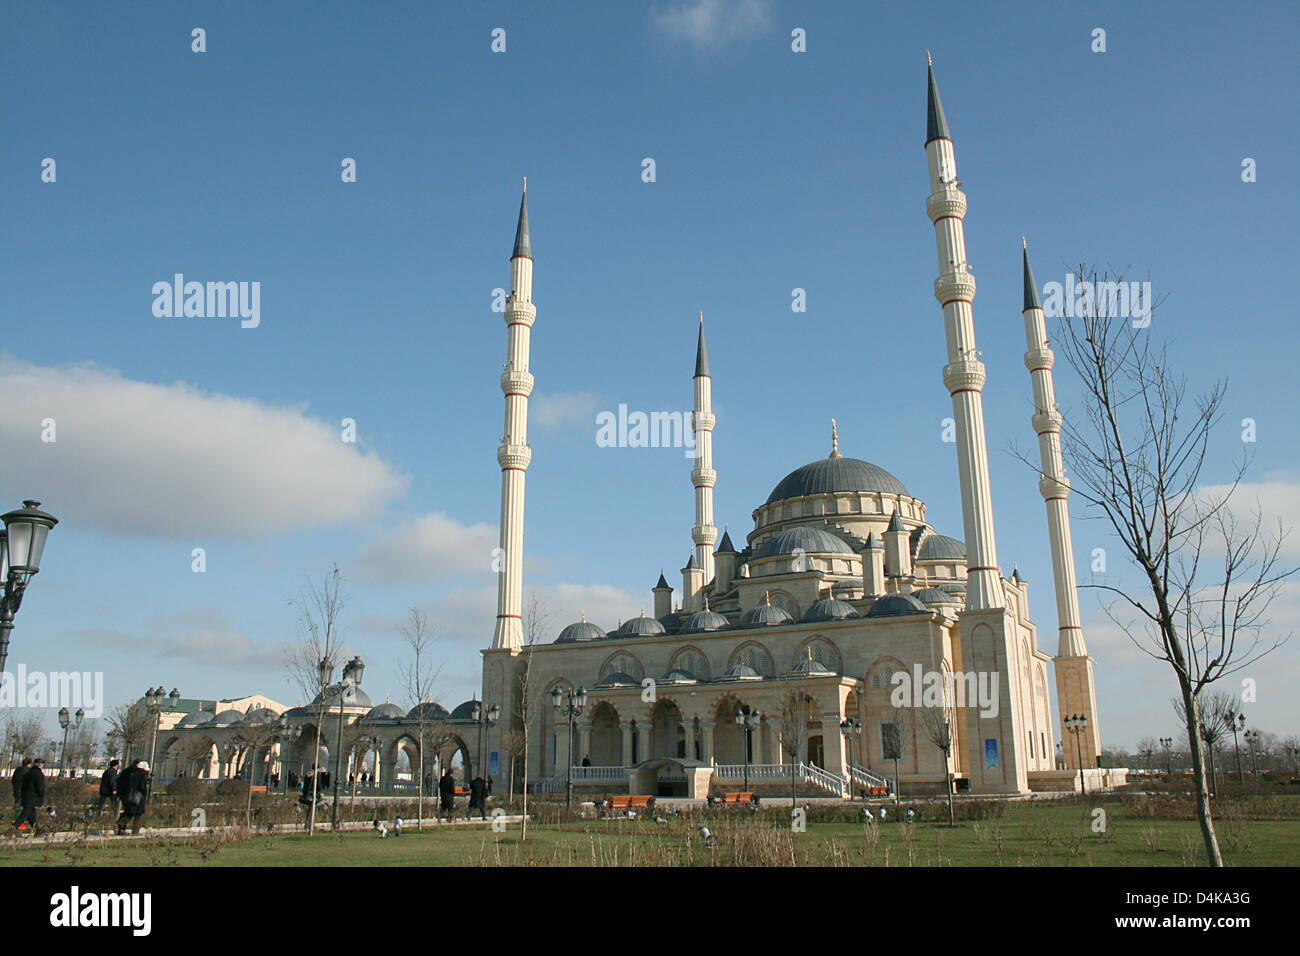 (Dpa-Datei) Ein Datei-Bild vom 17. Dezember 2008 fängt die neue Moschee in der Innenstadt von Grosny, Tschetschenien. Nach mehr als zehn Jahren hat Russland den anti-Terror-Status des ehemaligen Bereichs Tschetschenien aufgehoben. Russische Nachrichtenagentur Interfax zitiert tschetschenischen Präsidenten Ramzan Kadyrov am 16. April 2009, die eine deprimierende Kapitel der russischen Teilrepublik Tschetschenien beendet wurde. Das Ende der Stockfoto